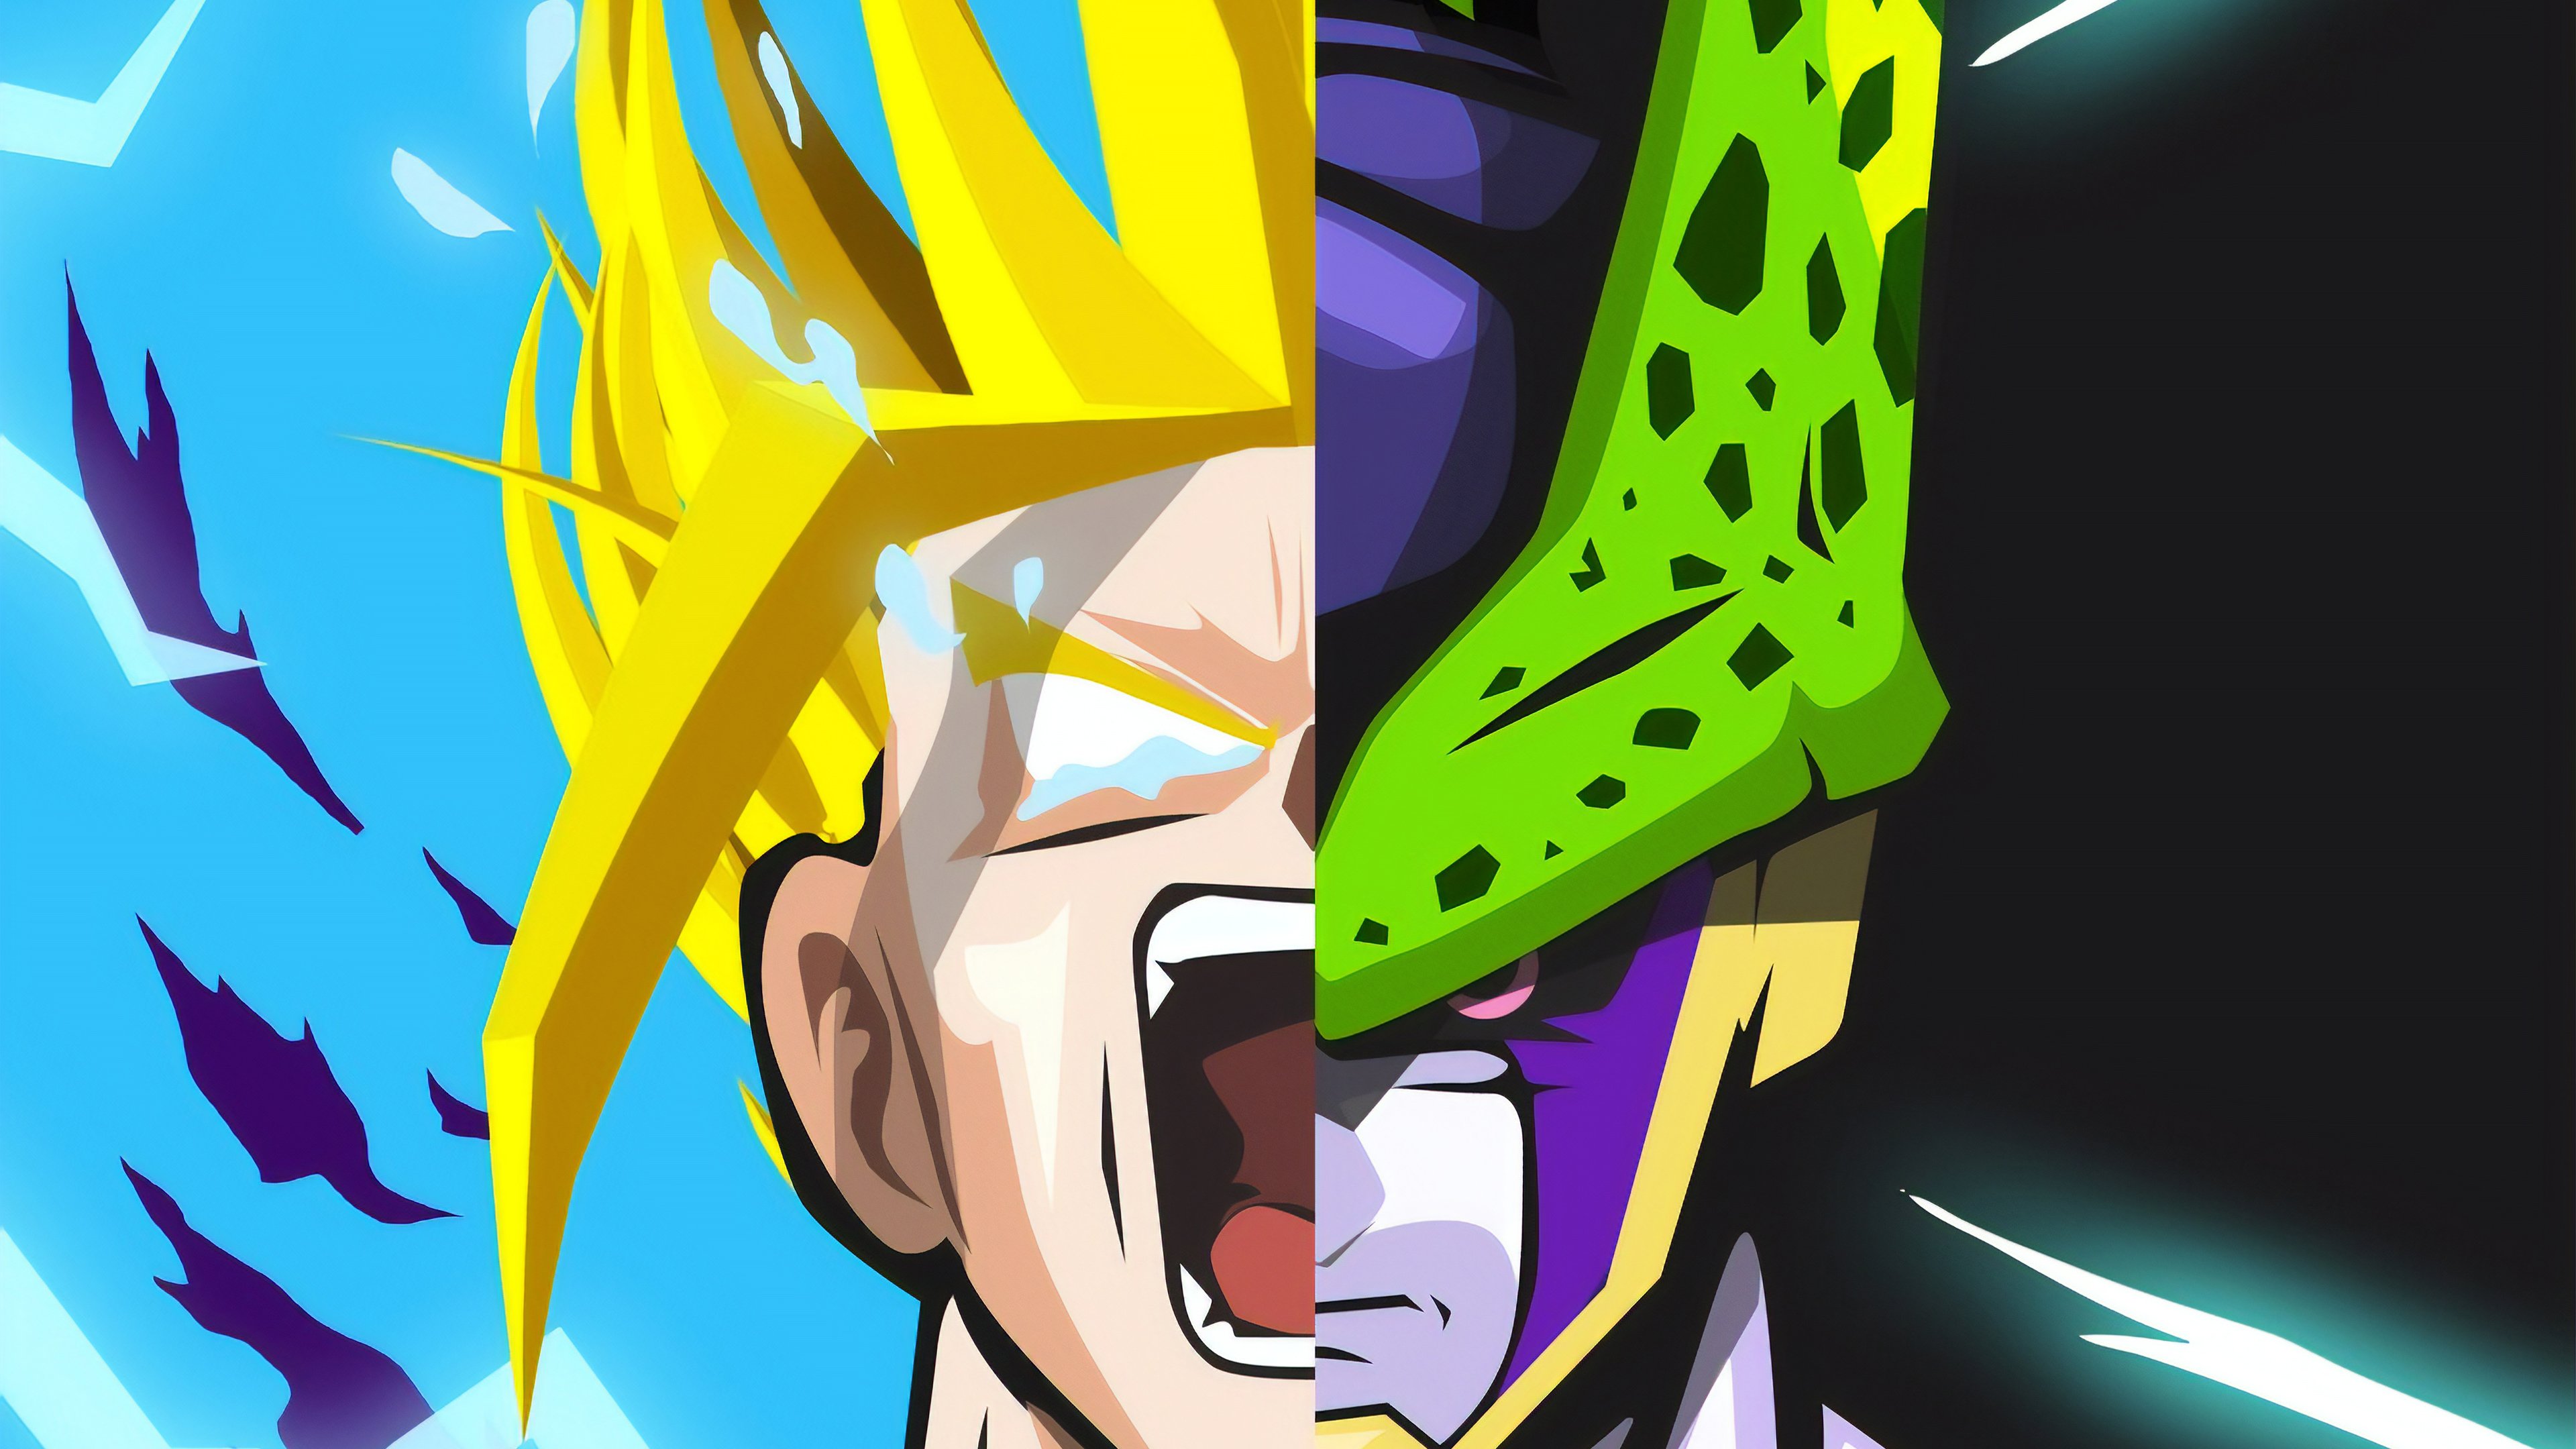 Fondos de pantalla Anime Goku y Cell de Dragon Ball